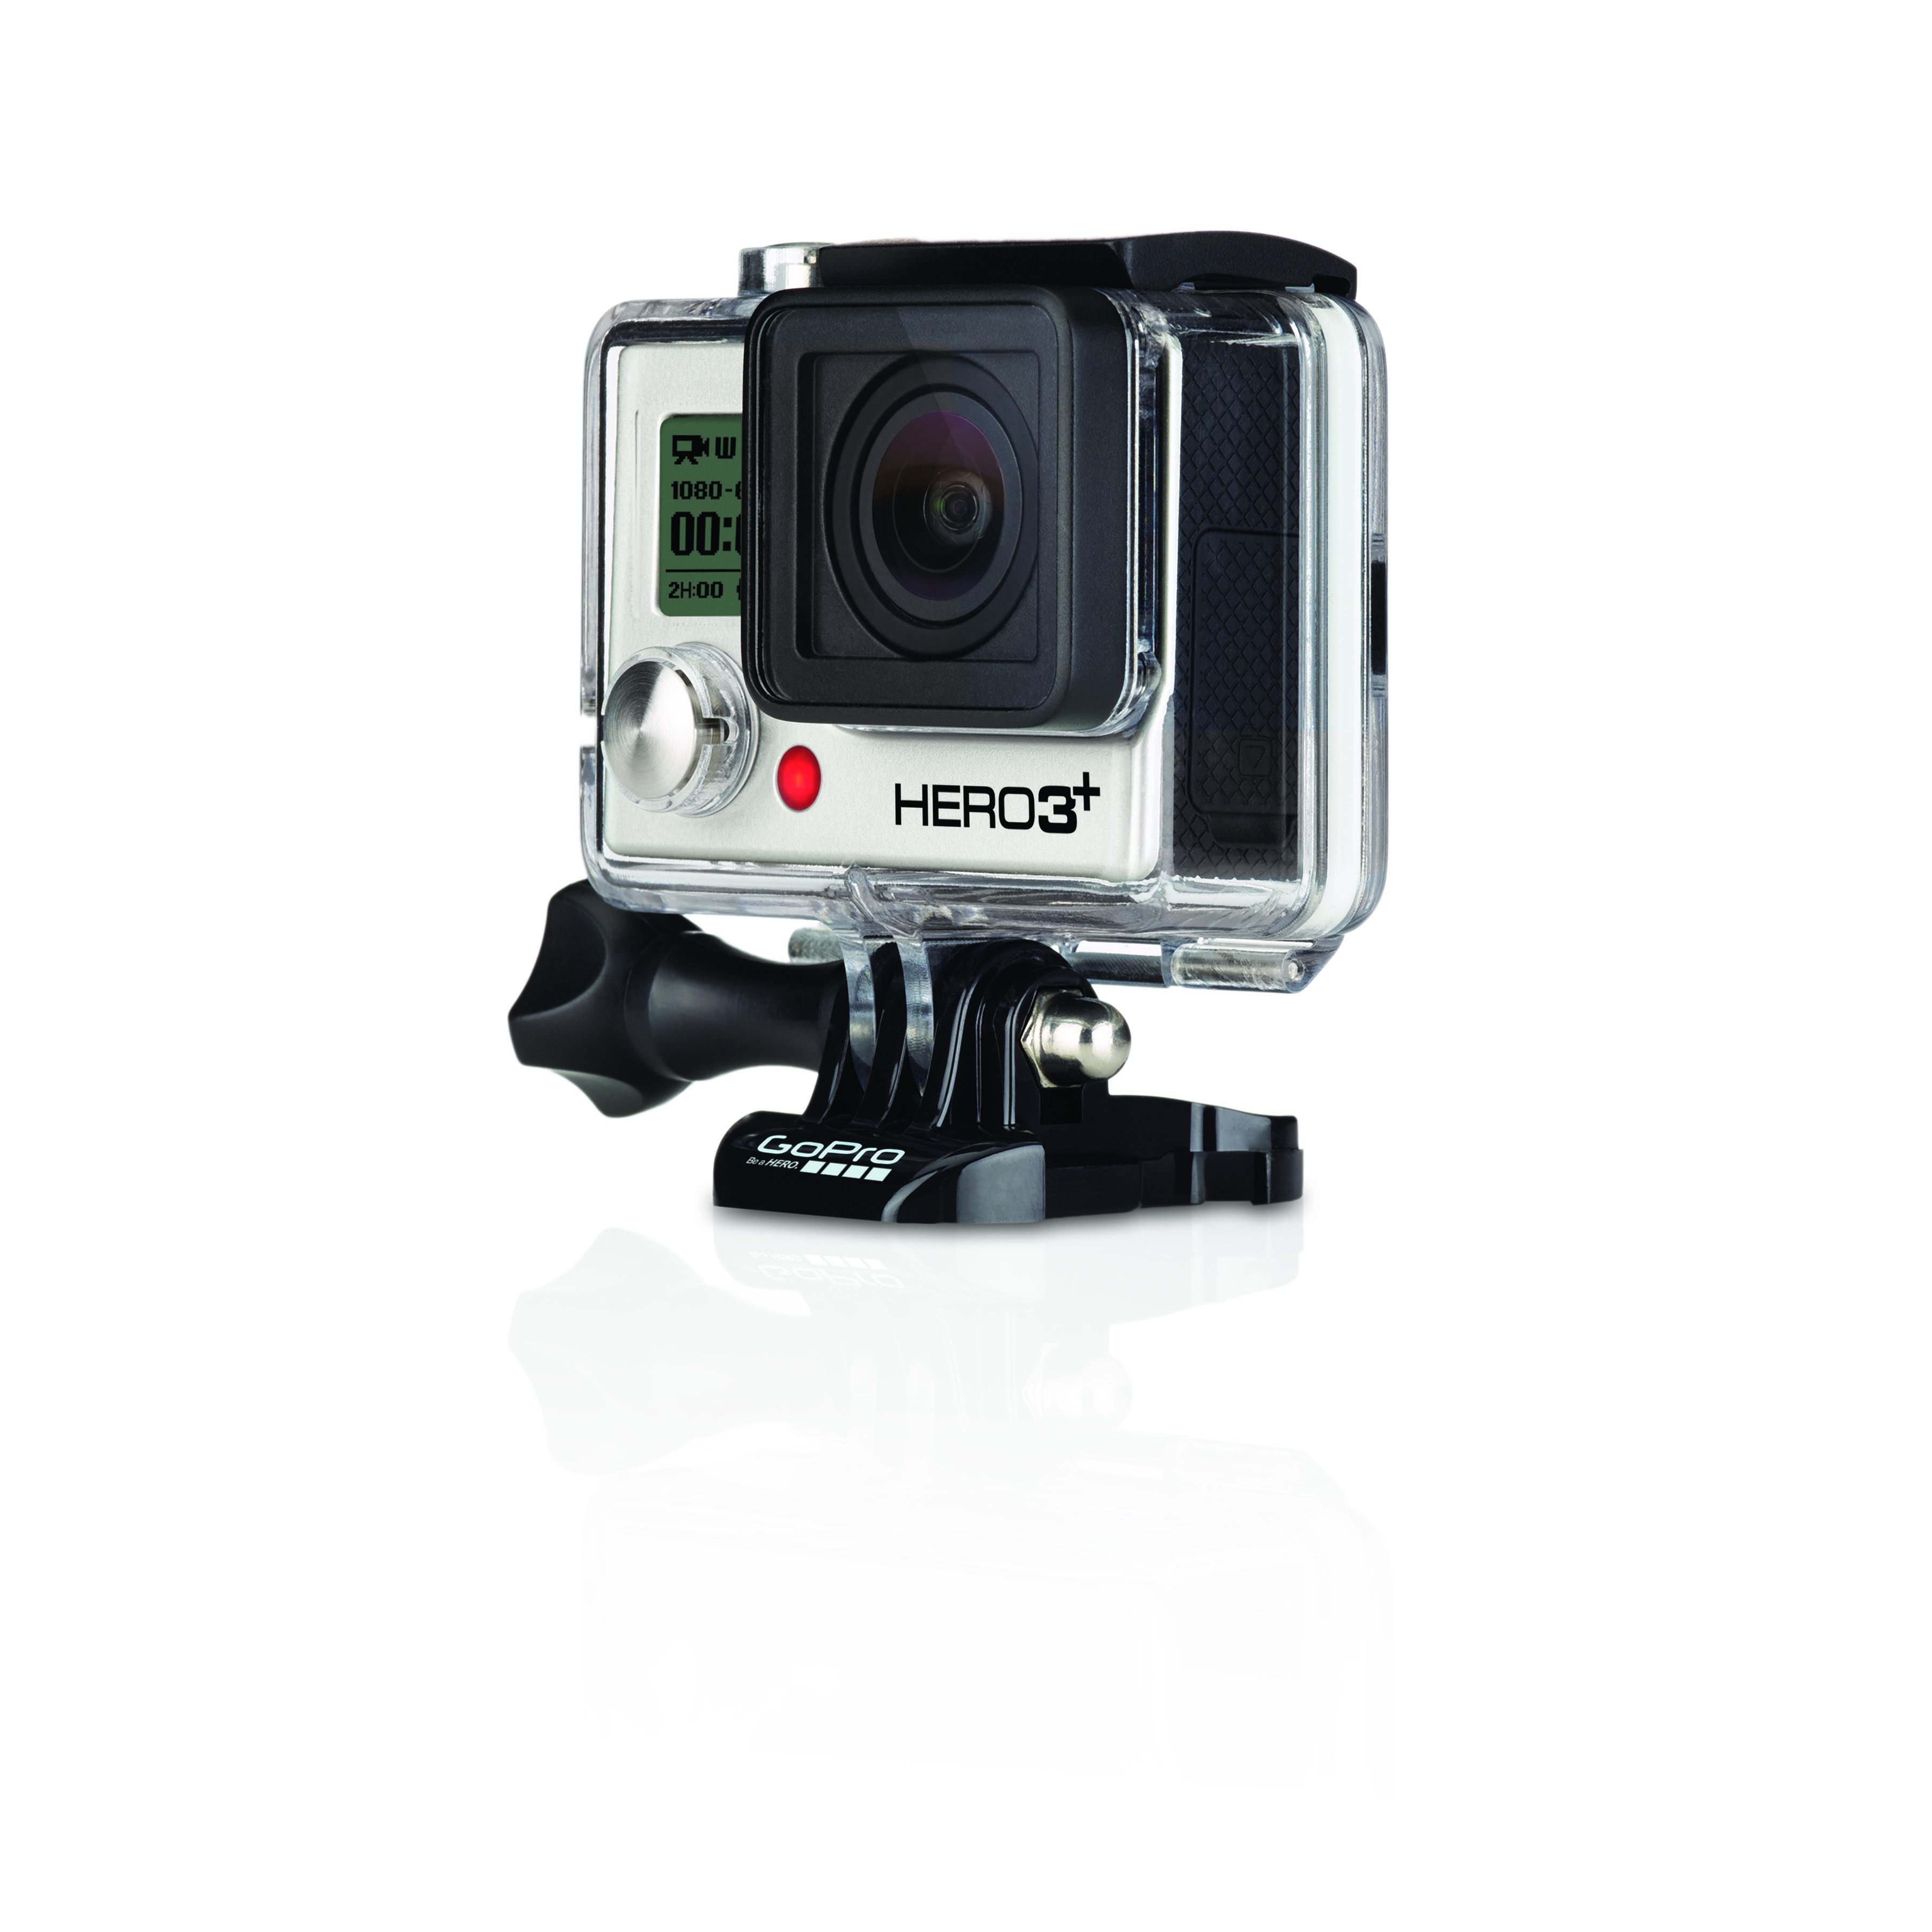 Новая экшн камера GoPro – HERO3+ уже в Украине!